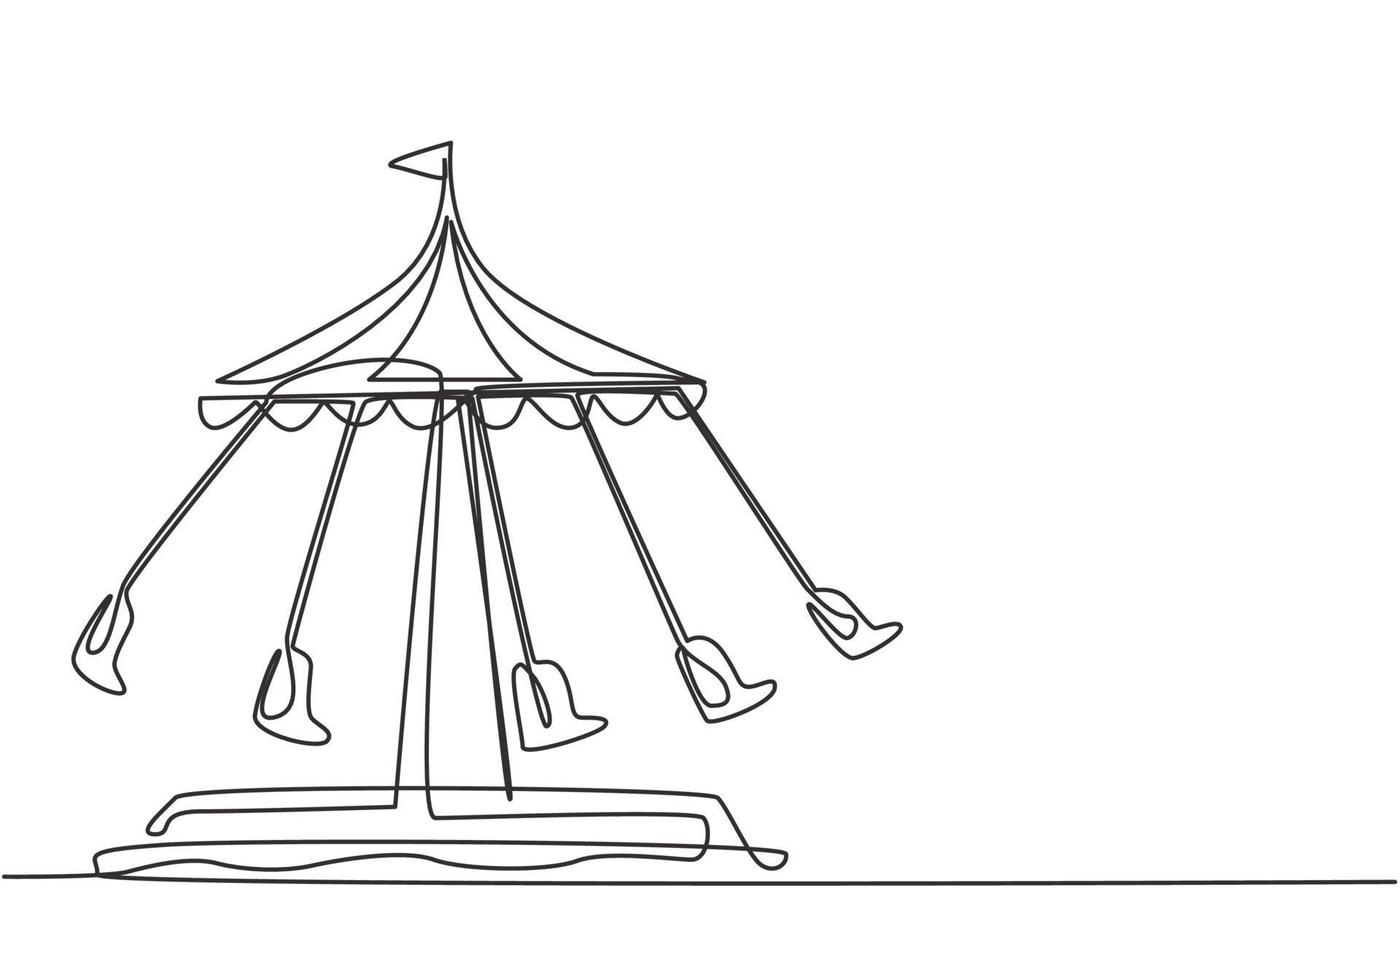 kontinuerlig en linje ritning av en vågswinger i en nöjespark med fem platser och en flagga ovanför tältet. passagerare kan svänga runt på himlen. enkel rita design, vektorgrafisk illustration vektor